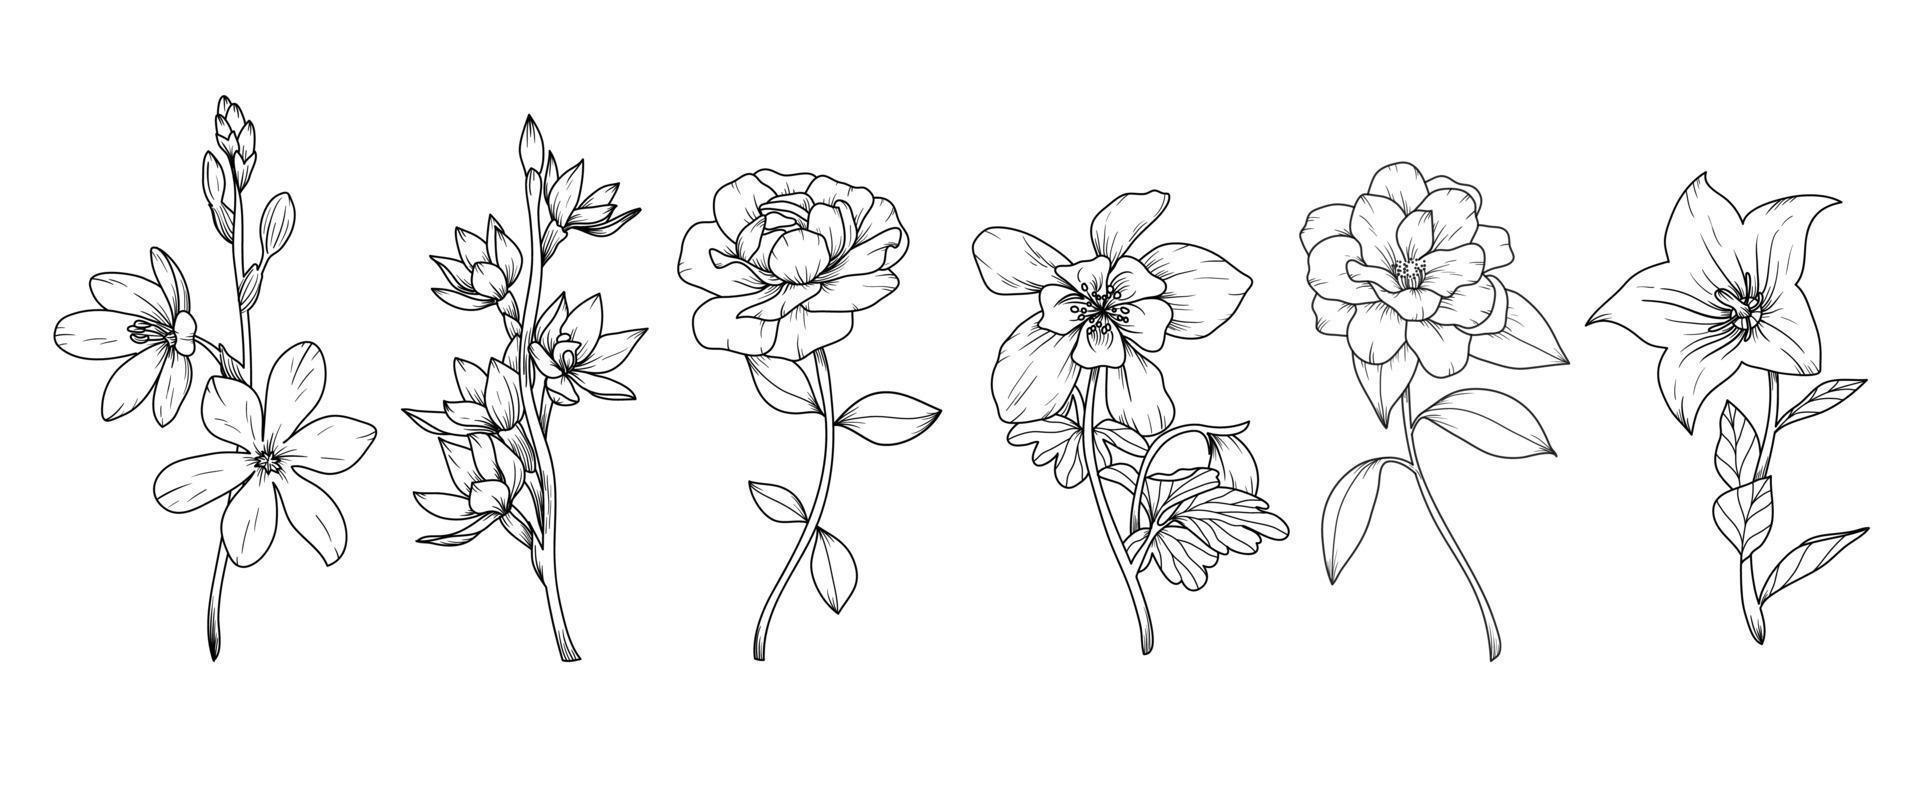 reeks van hand- getrokken botanisch bloemen lijn kunst vector. verzameling van zwart wit contour tekening van roos, wilde bloemen, blad. ontwerp illustratie voor afdrukken, logo, kunstmatig, poster, kaart, branding. vector